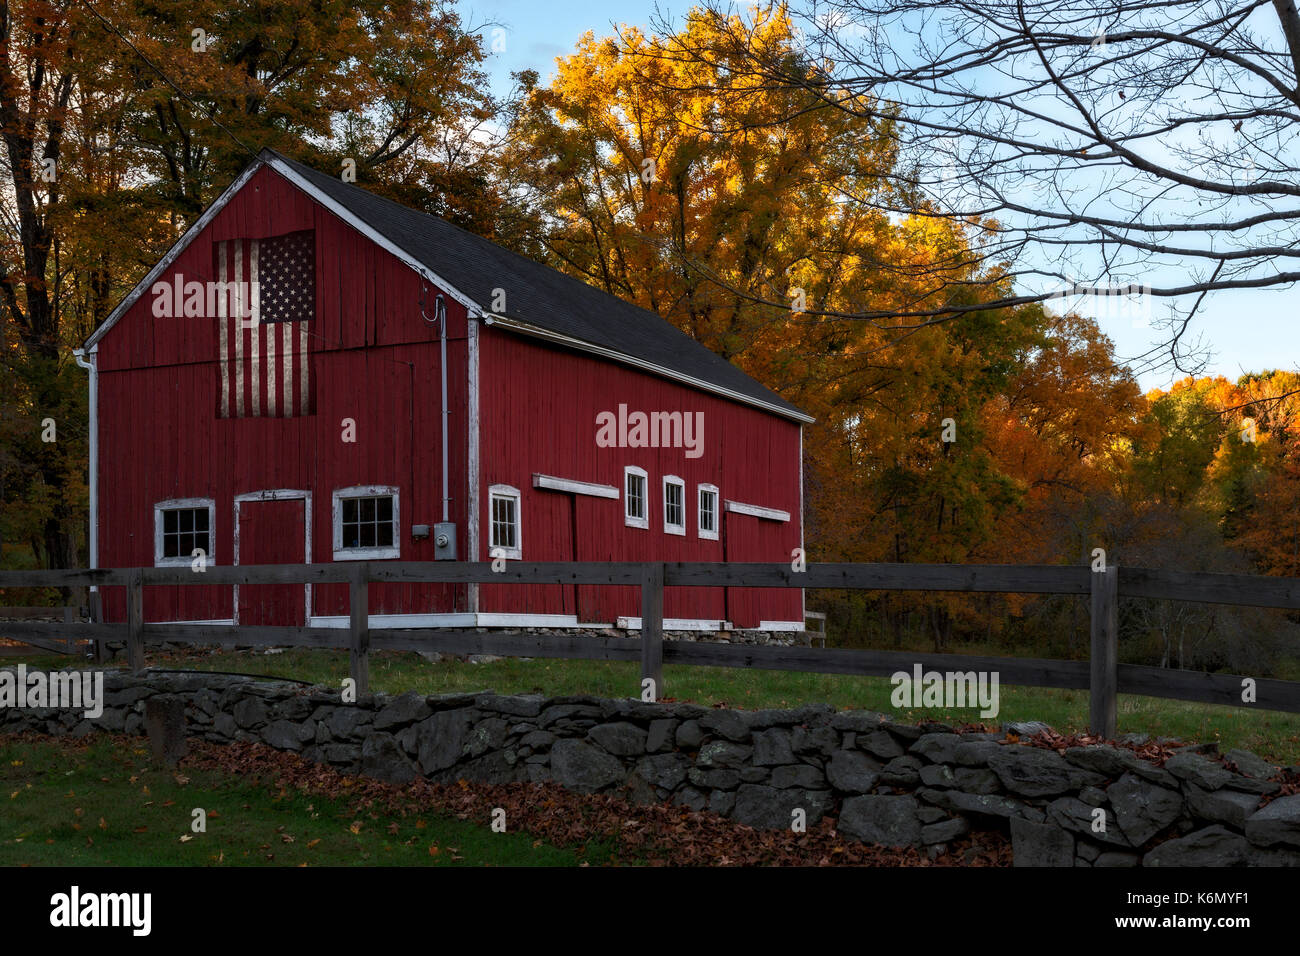 Grange rustique rouge - rouge cette grange rustique dans le Connecticut CT affiche fièrement le drapeau des États-Unis d'Amérique. Banque D'Images